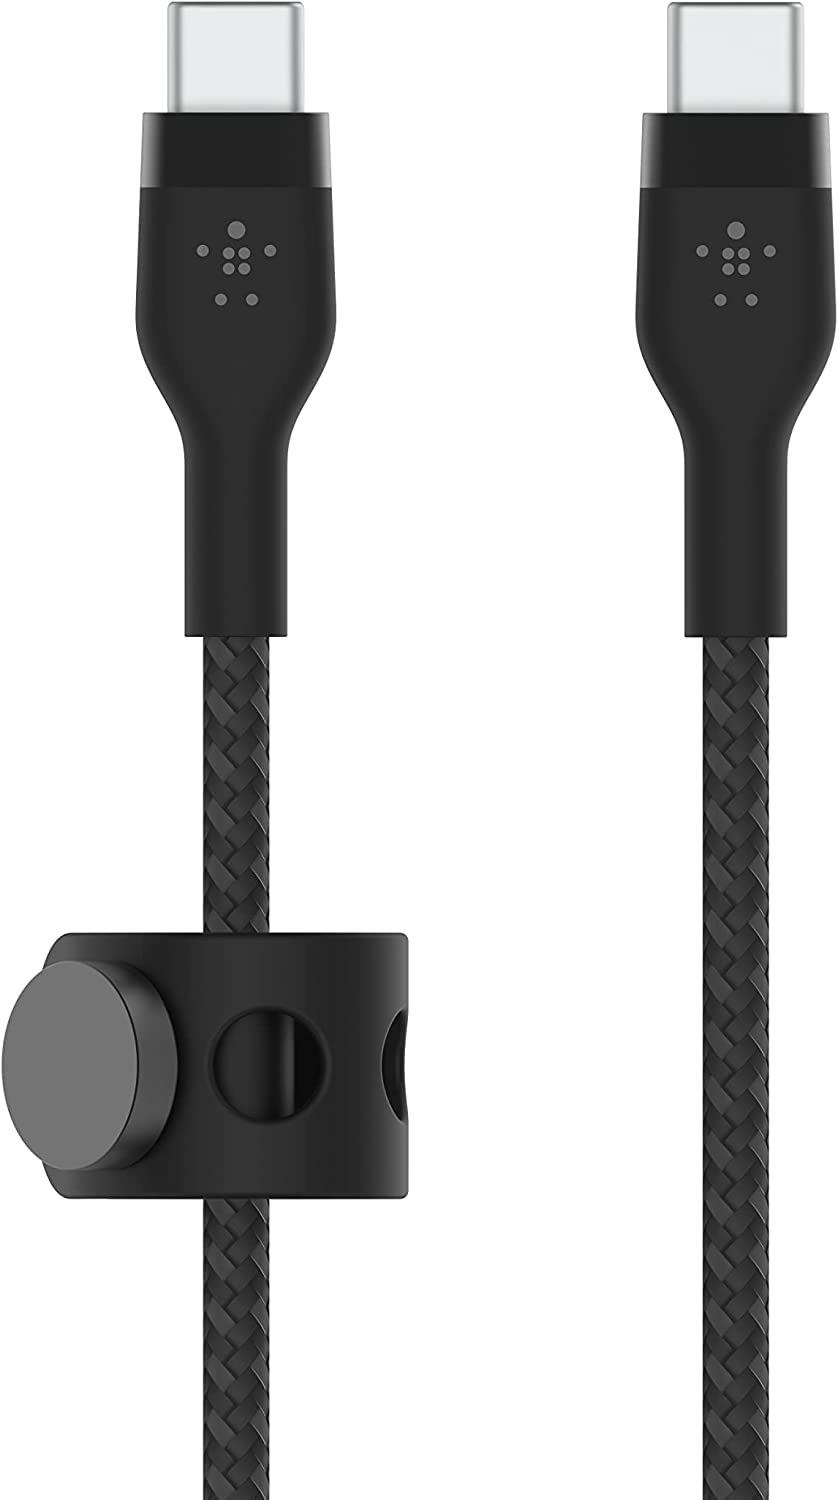 Cables USB Belkin Adaptateur USB A Femelle vers USB C noir. 0,15m